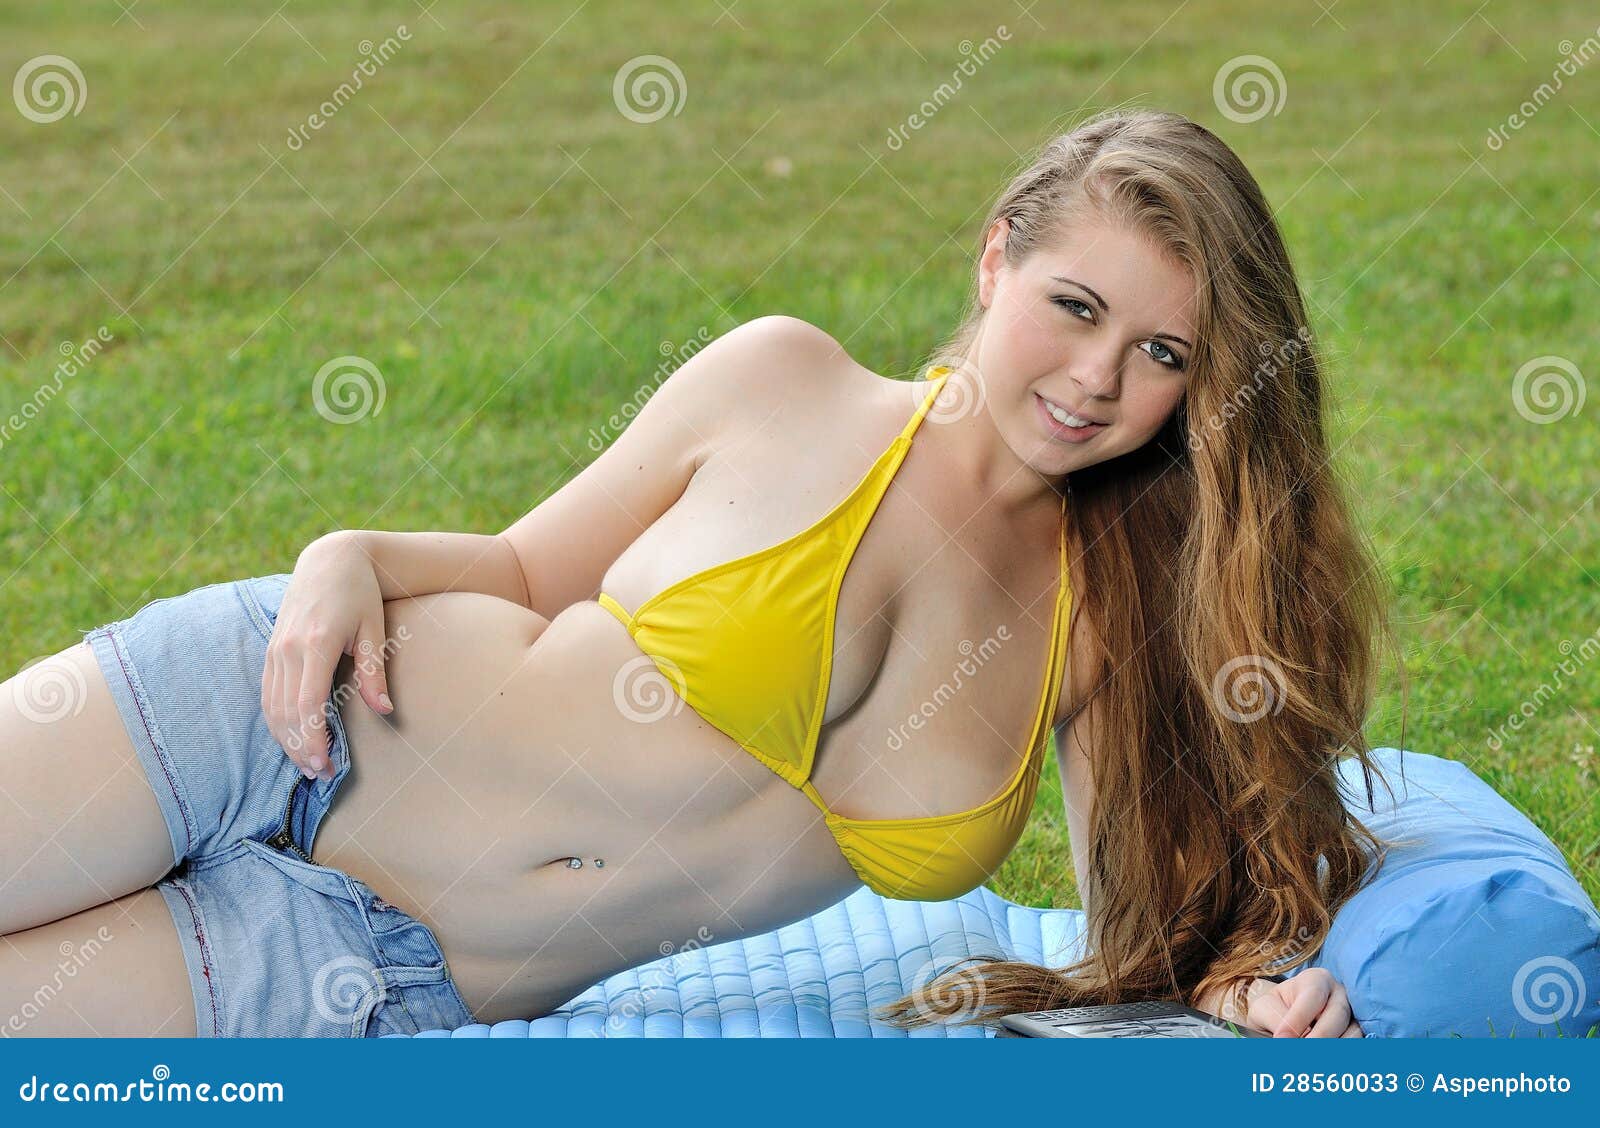 Young women taking off bikini tops, Lost Lake, Oregon, USA Stock